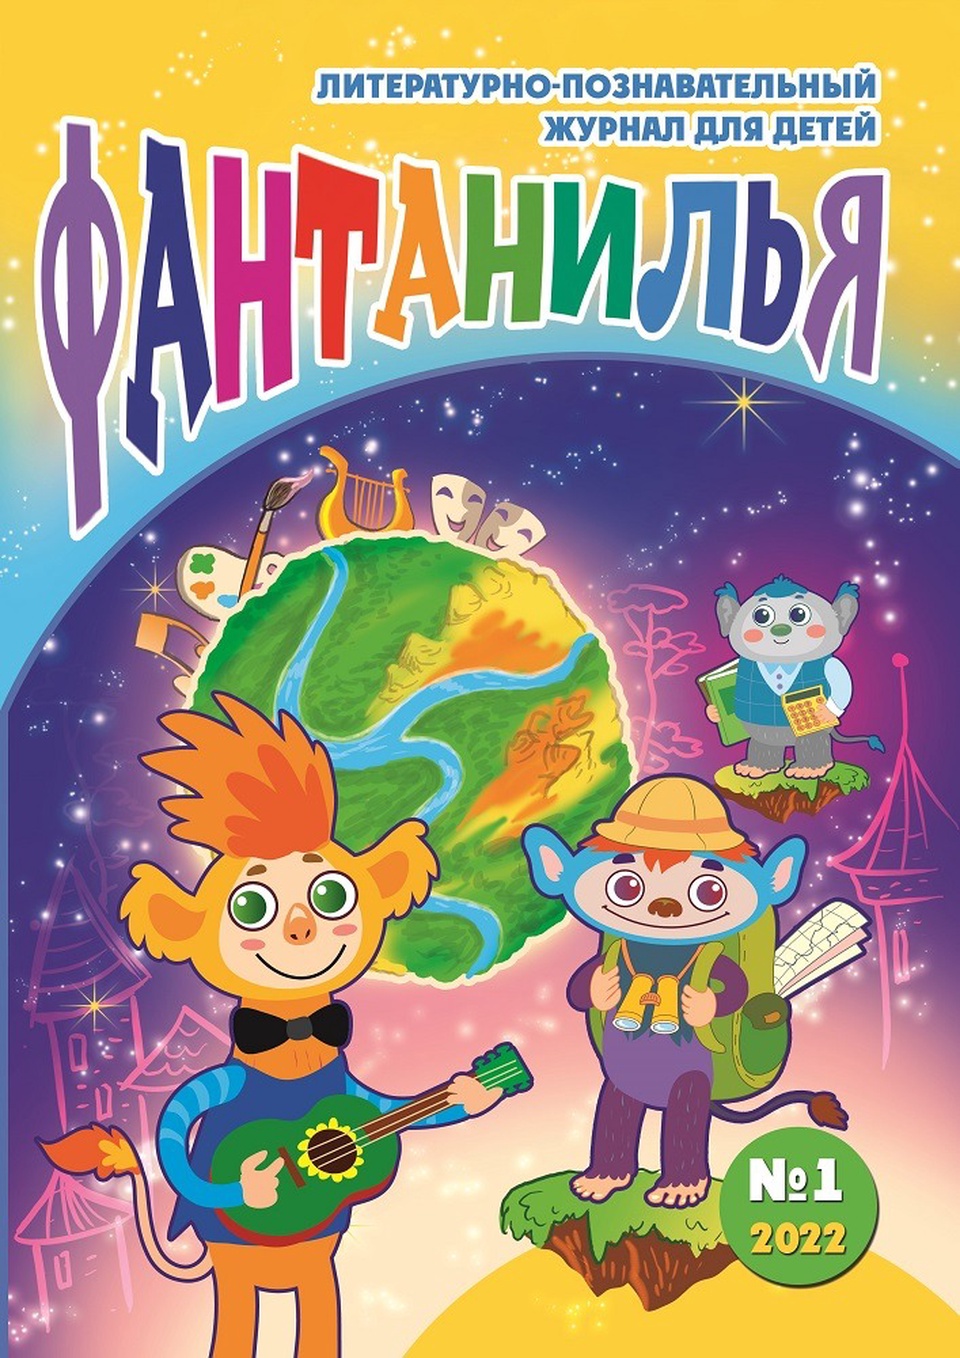 Литературно-познавательный журнал для детей «Фантанилья», выпуск № 1 - 200 ₽, заказать онлайн.